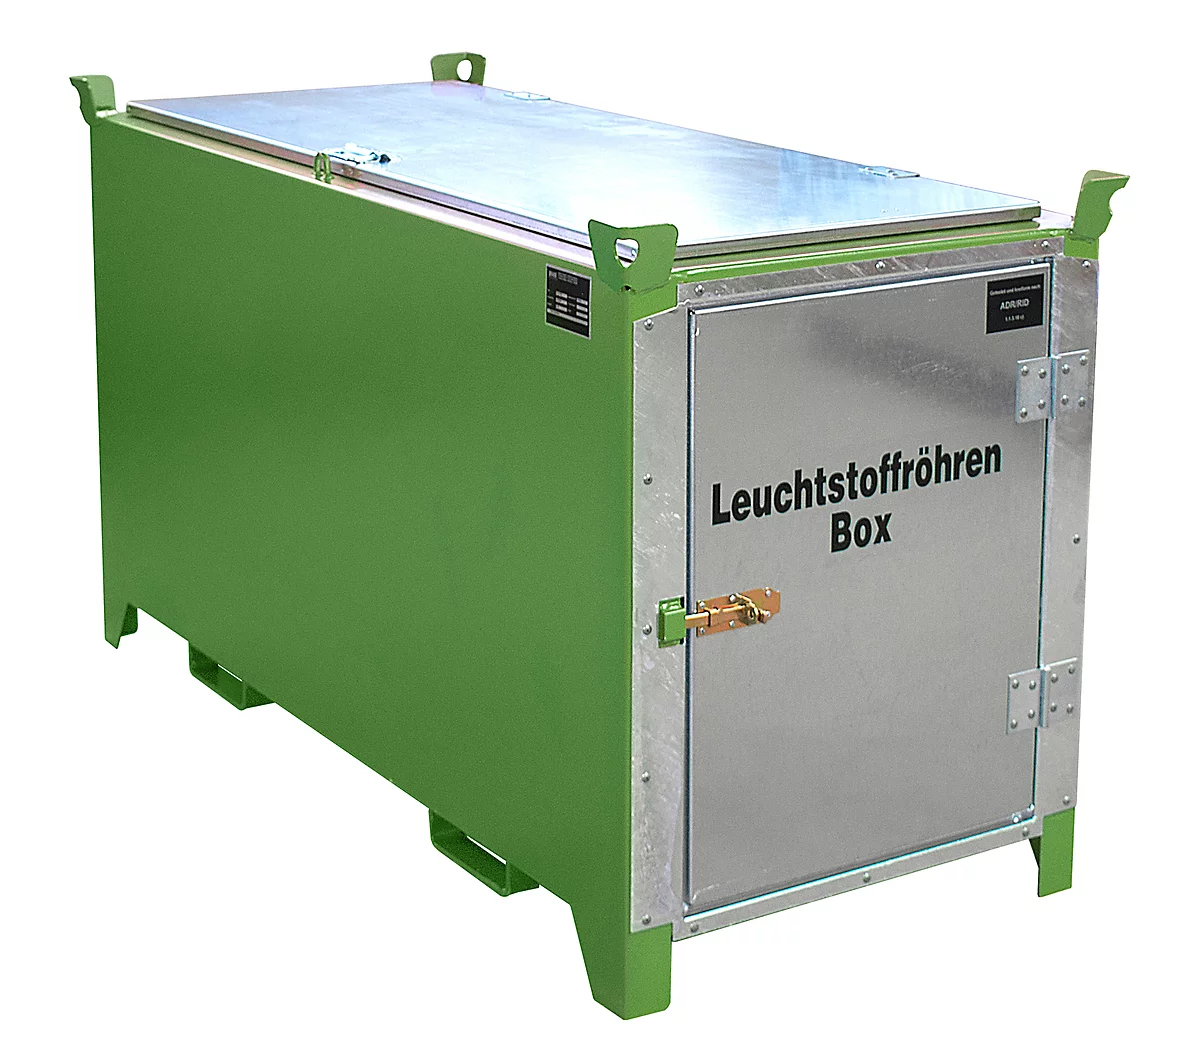 Leuchtstoffröhrenbox BAUER SL-D 150, Stahlblech, unterfahrbar, abschließbar, Tür/Deckel verzinkt, B 1700 x T 770 x H 975 mm, grün